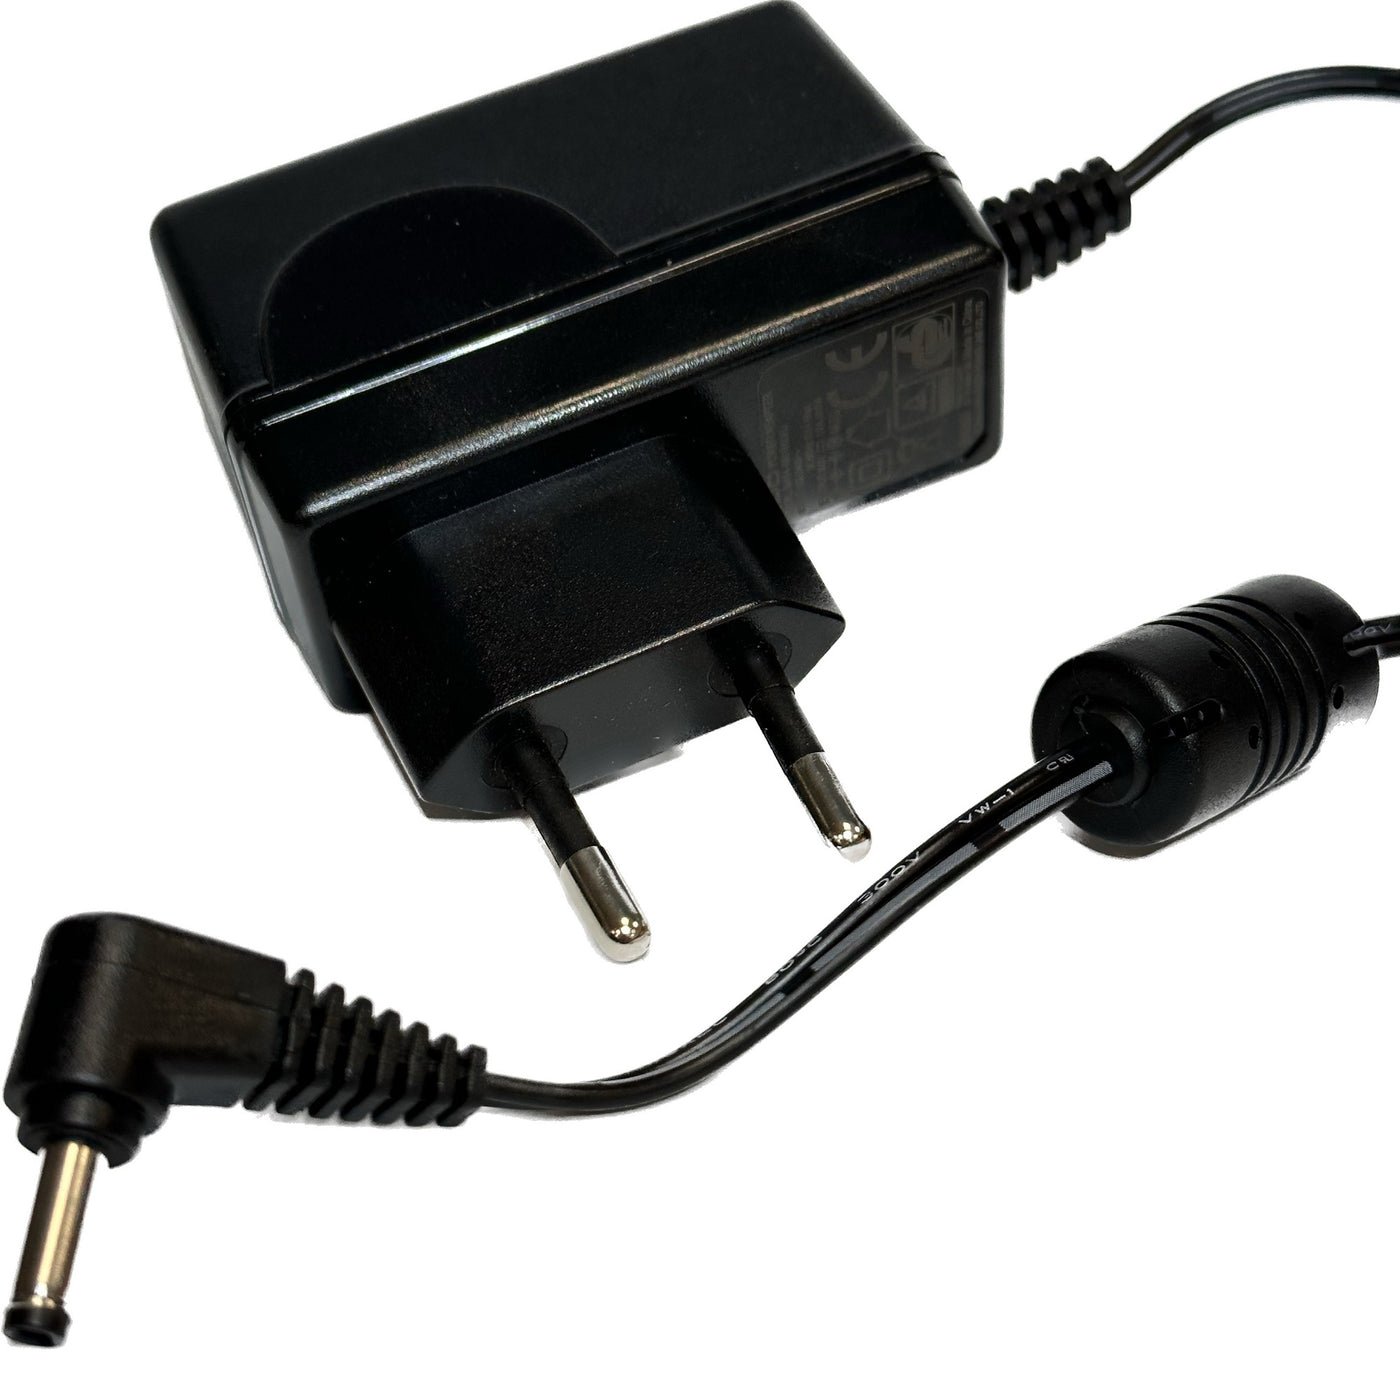 P001918 - Adapter voor diverse DVP modellen